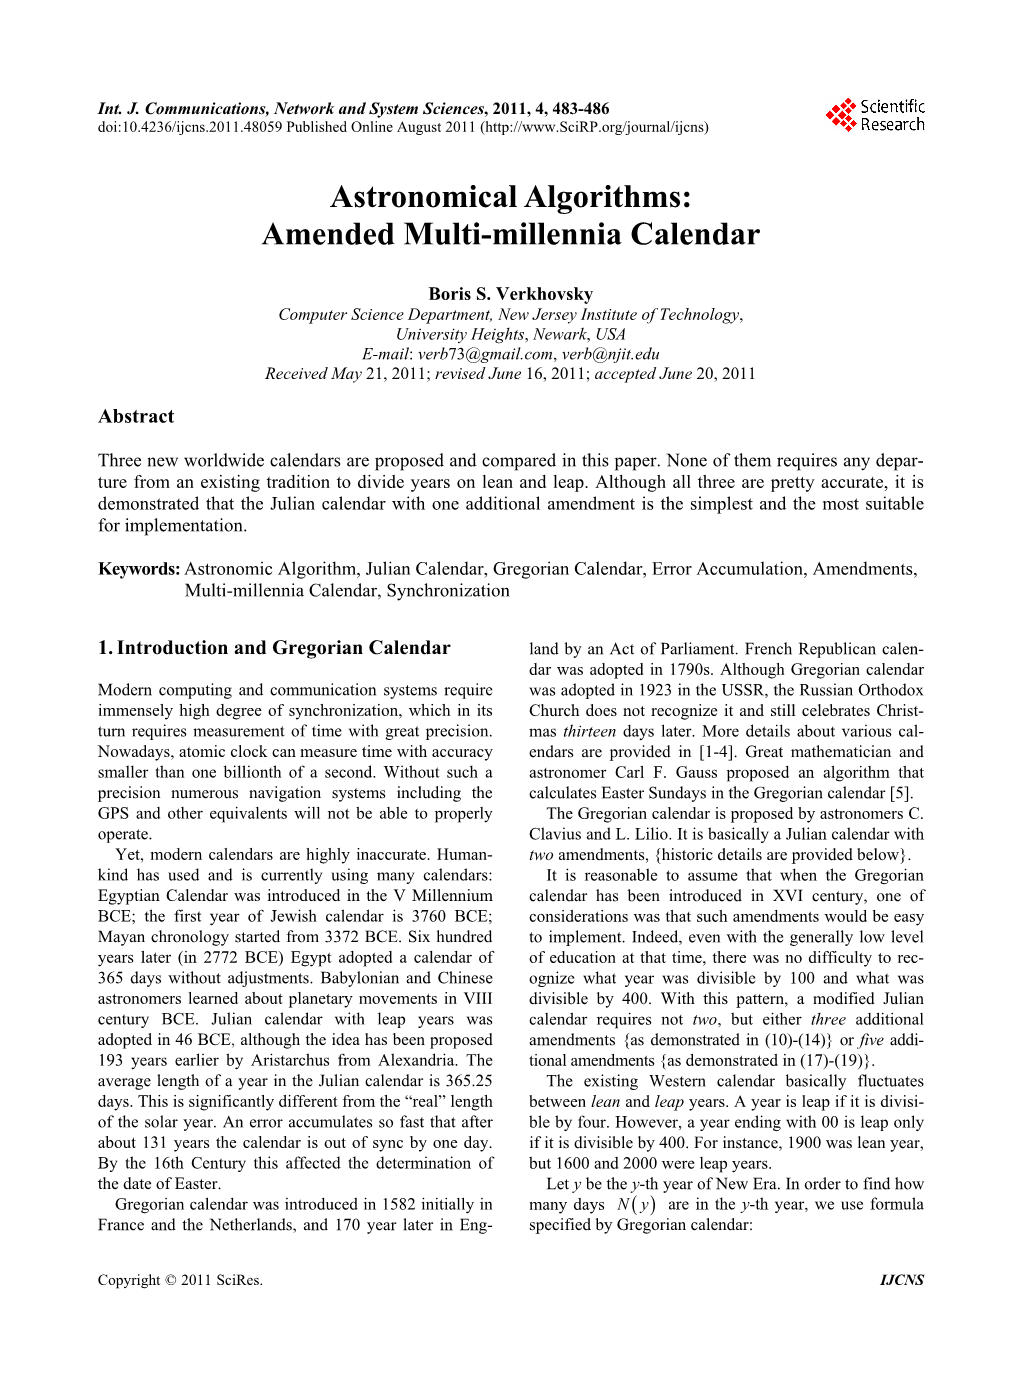 Astronomical Algorithms: Amended Multi-Millennia Calendar